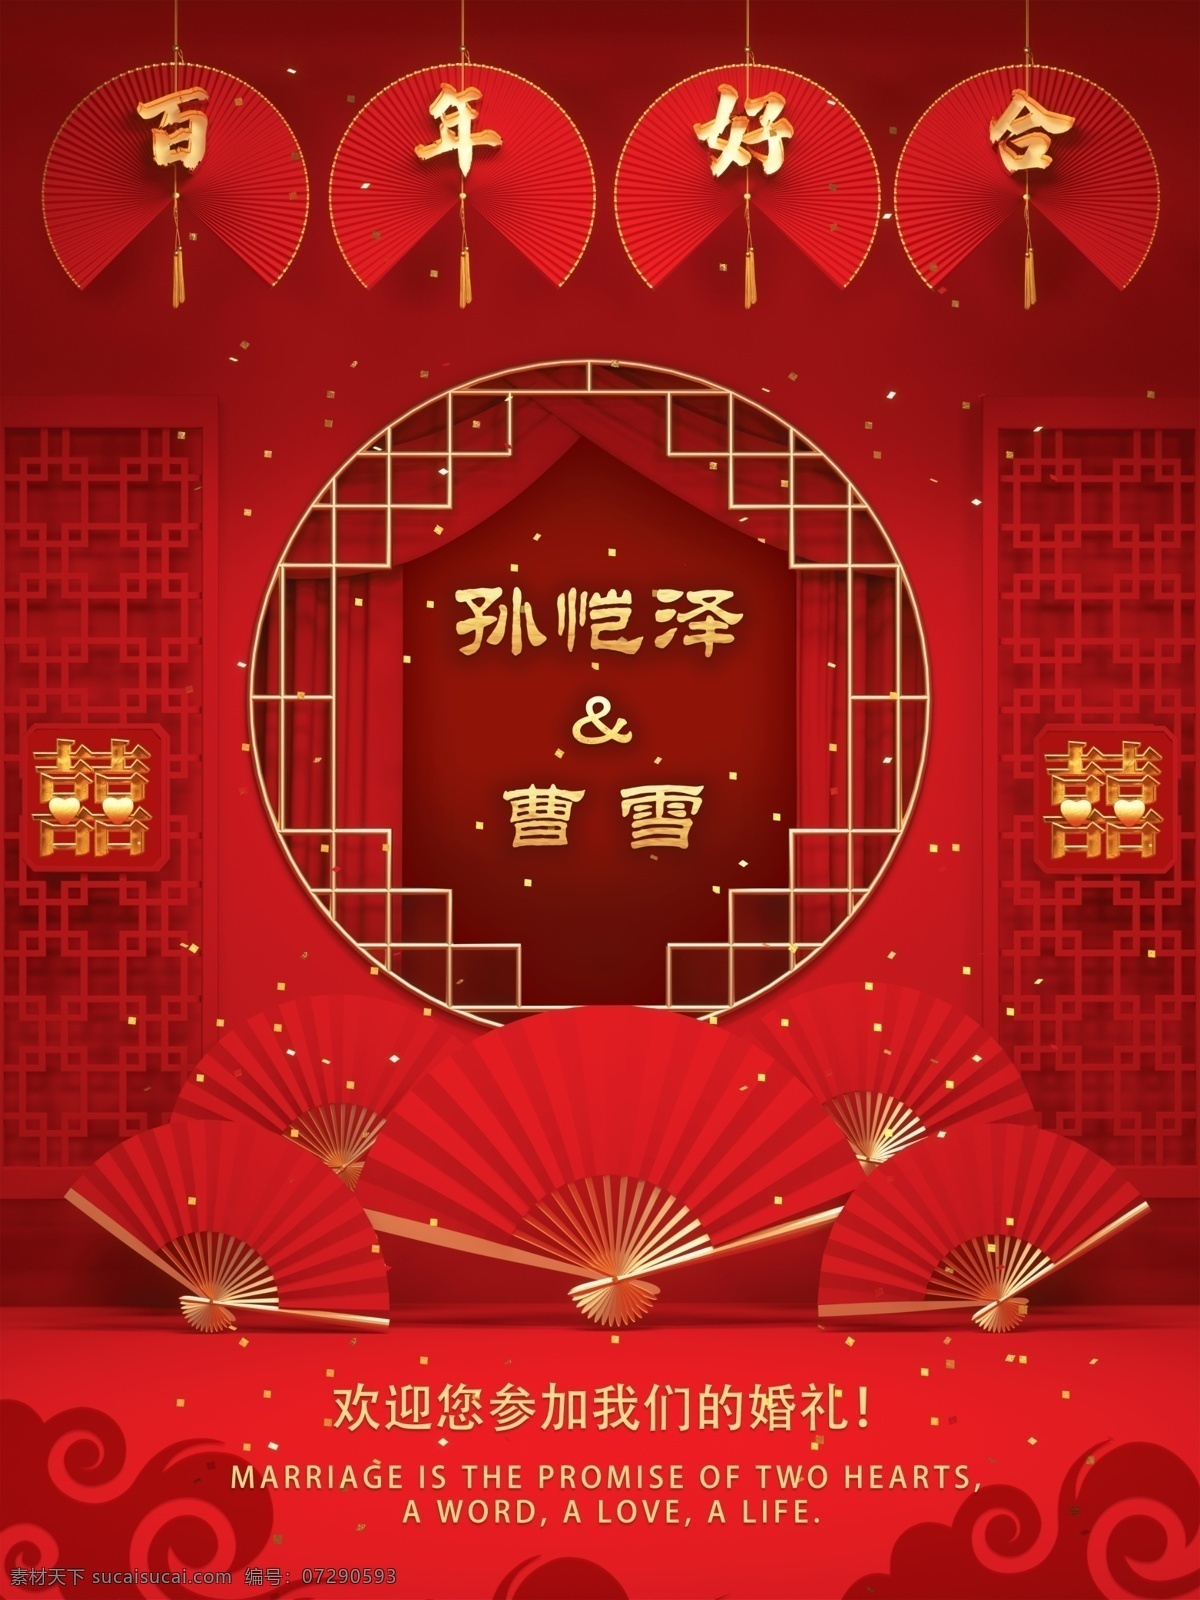 中式 婚礼 背景图片 背景 主题 喜字 百年好合 扇子 分层